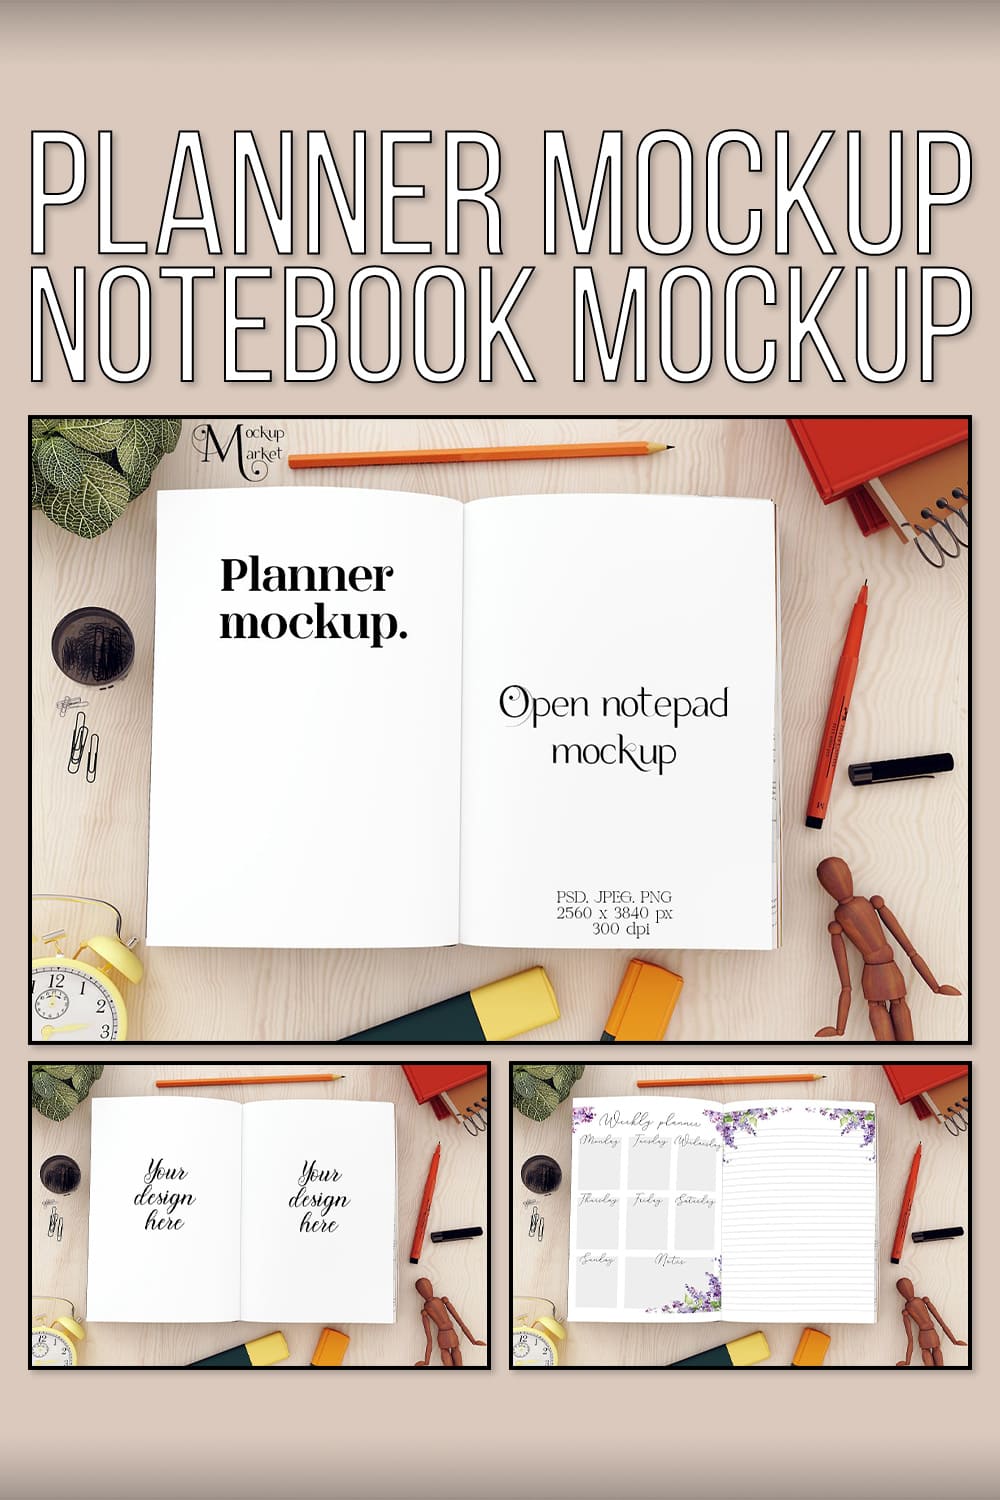 Planner Mockup. Notebook Mockup - Pinterest.